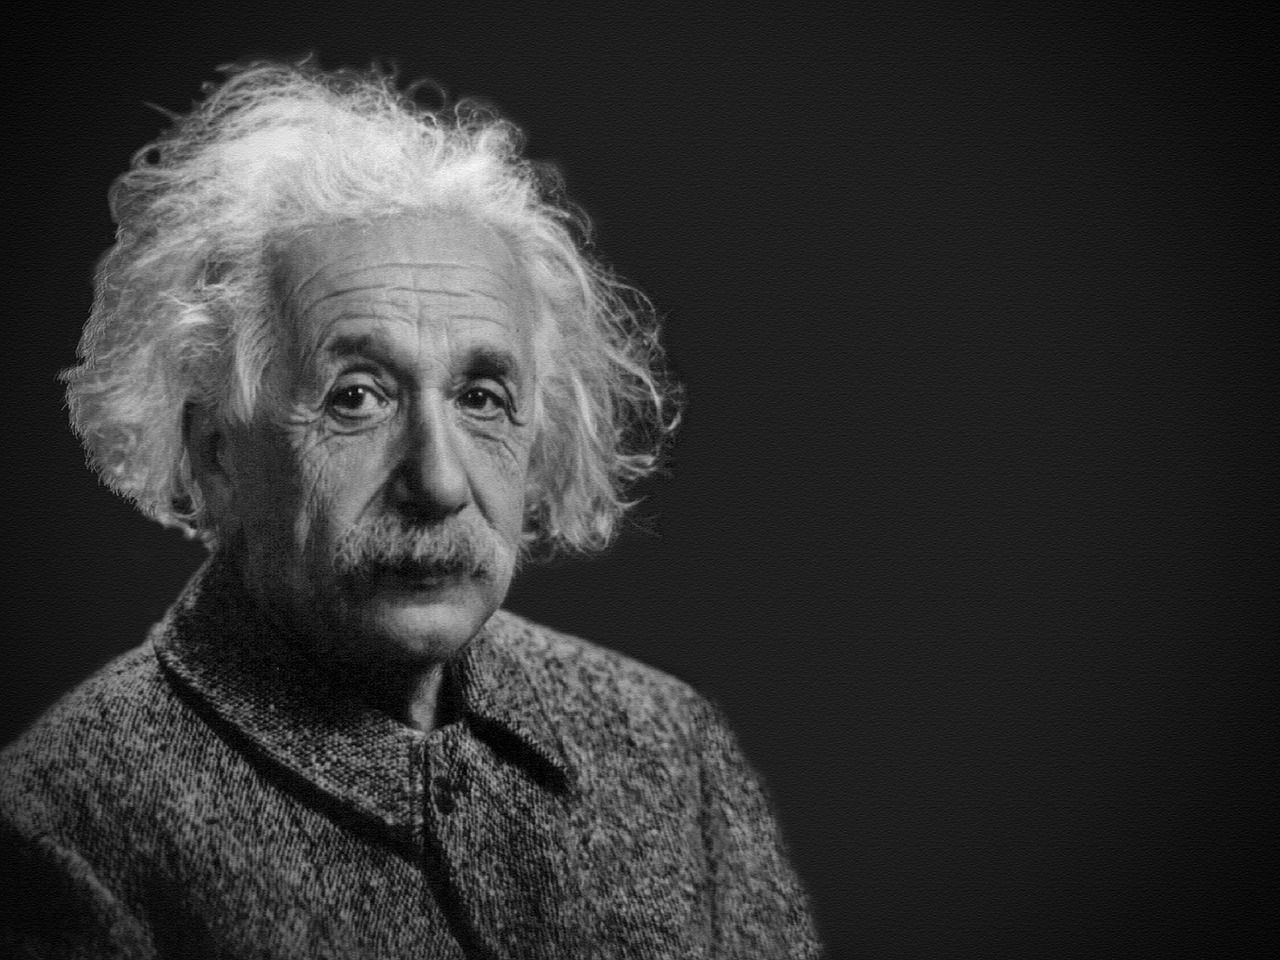 Albertas Einšteinas, Portretas, Teoretiko Gydytojas, Mokslininkas, Xx Amžiaus Asmenybė, E Mc2 Lygtis, Profesorius, Reliatyvumo Teorija, Bendra Reliatyvumo Teorija, Kvantinė Mechanika